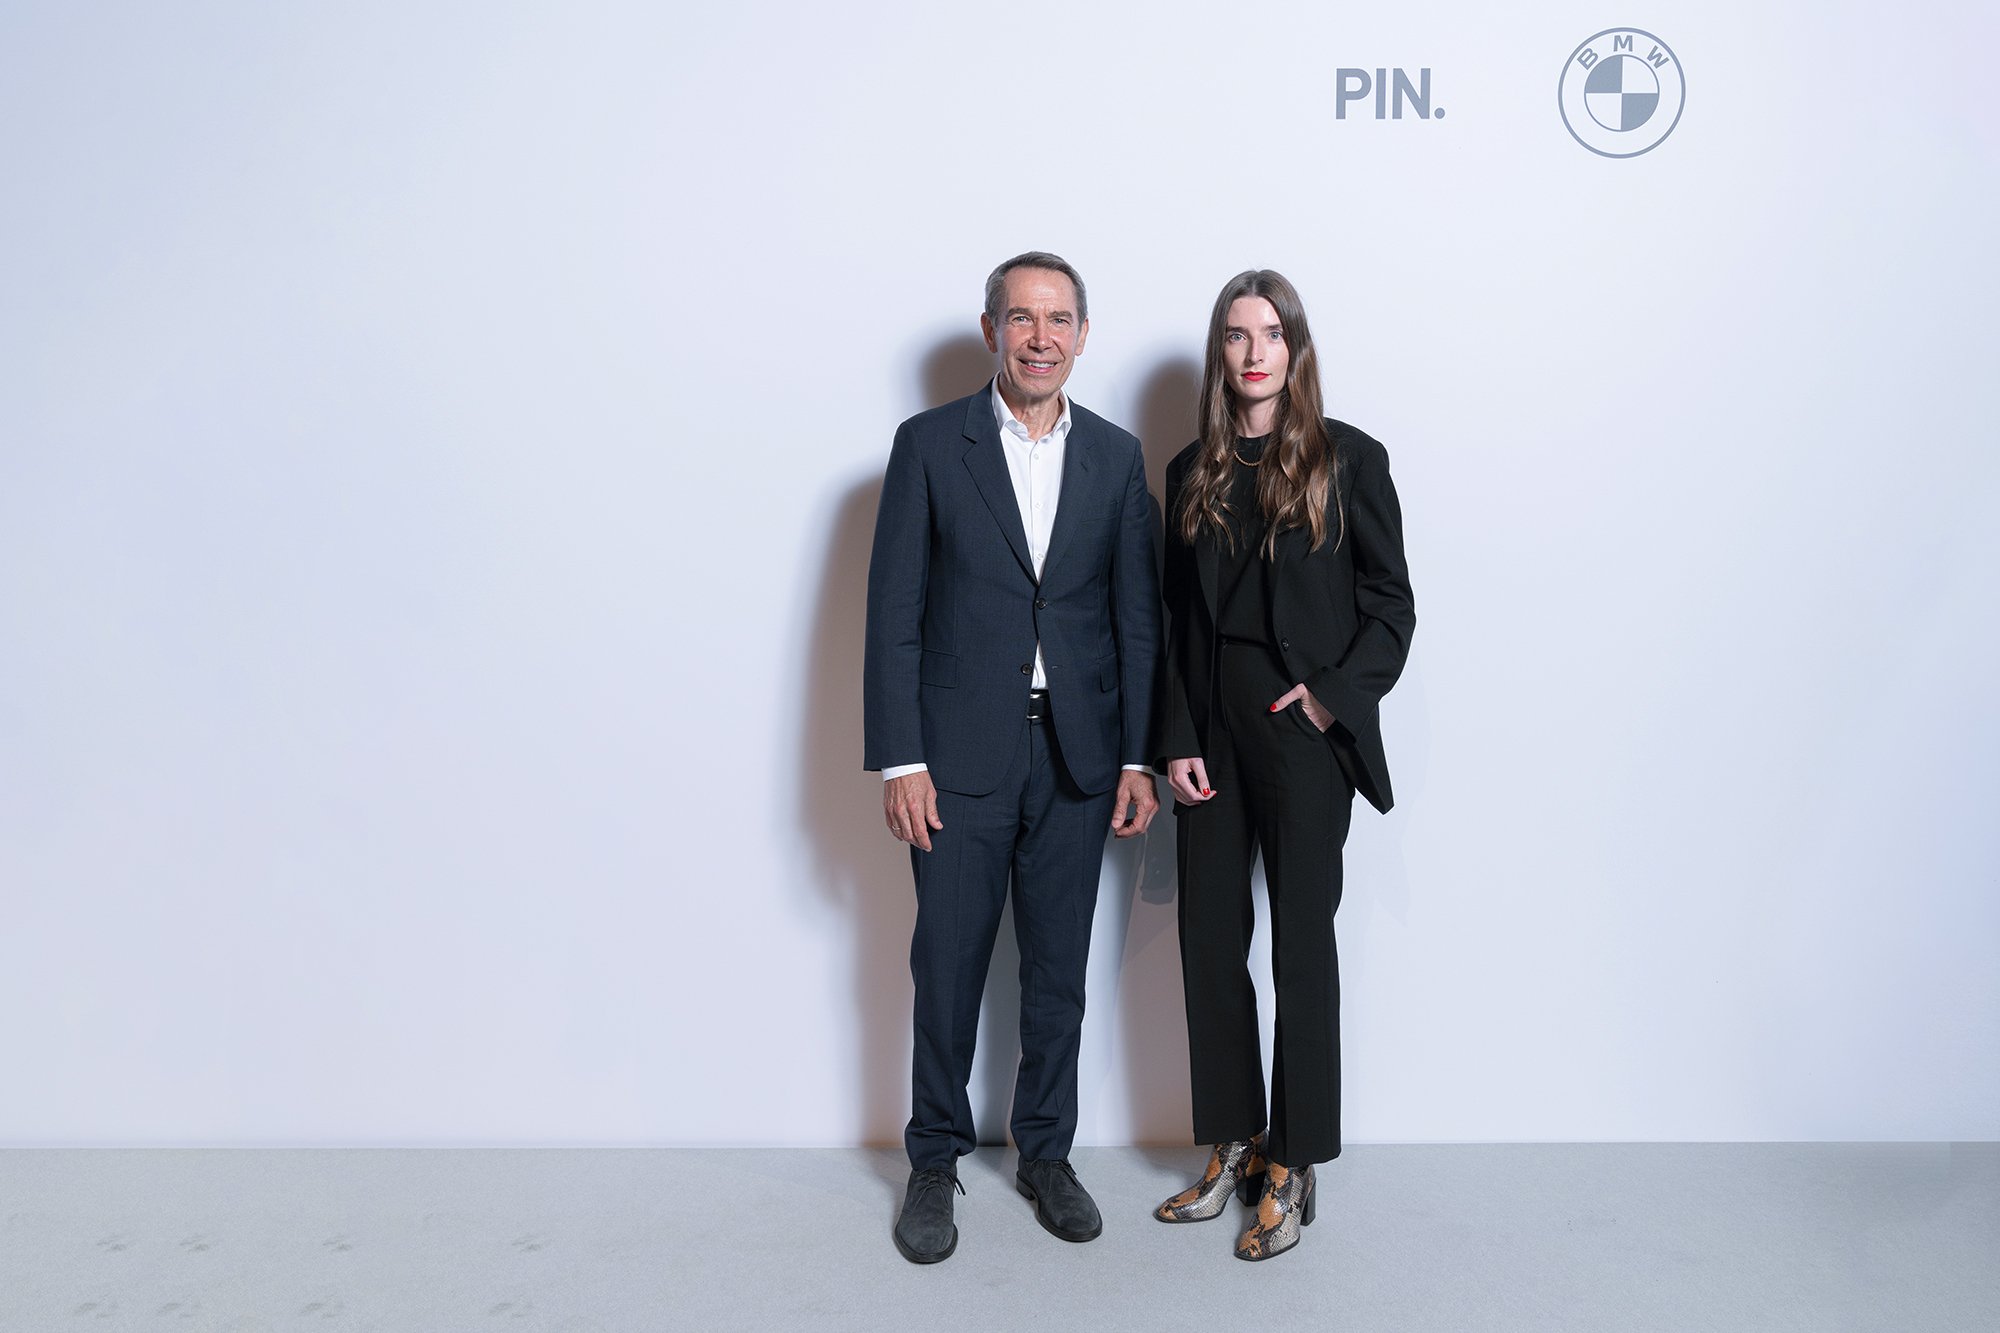 Jeff Koons and founder of ellectric Britta Reineke at the Pinakothek der Moderne inMunich 